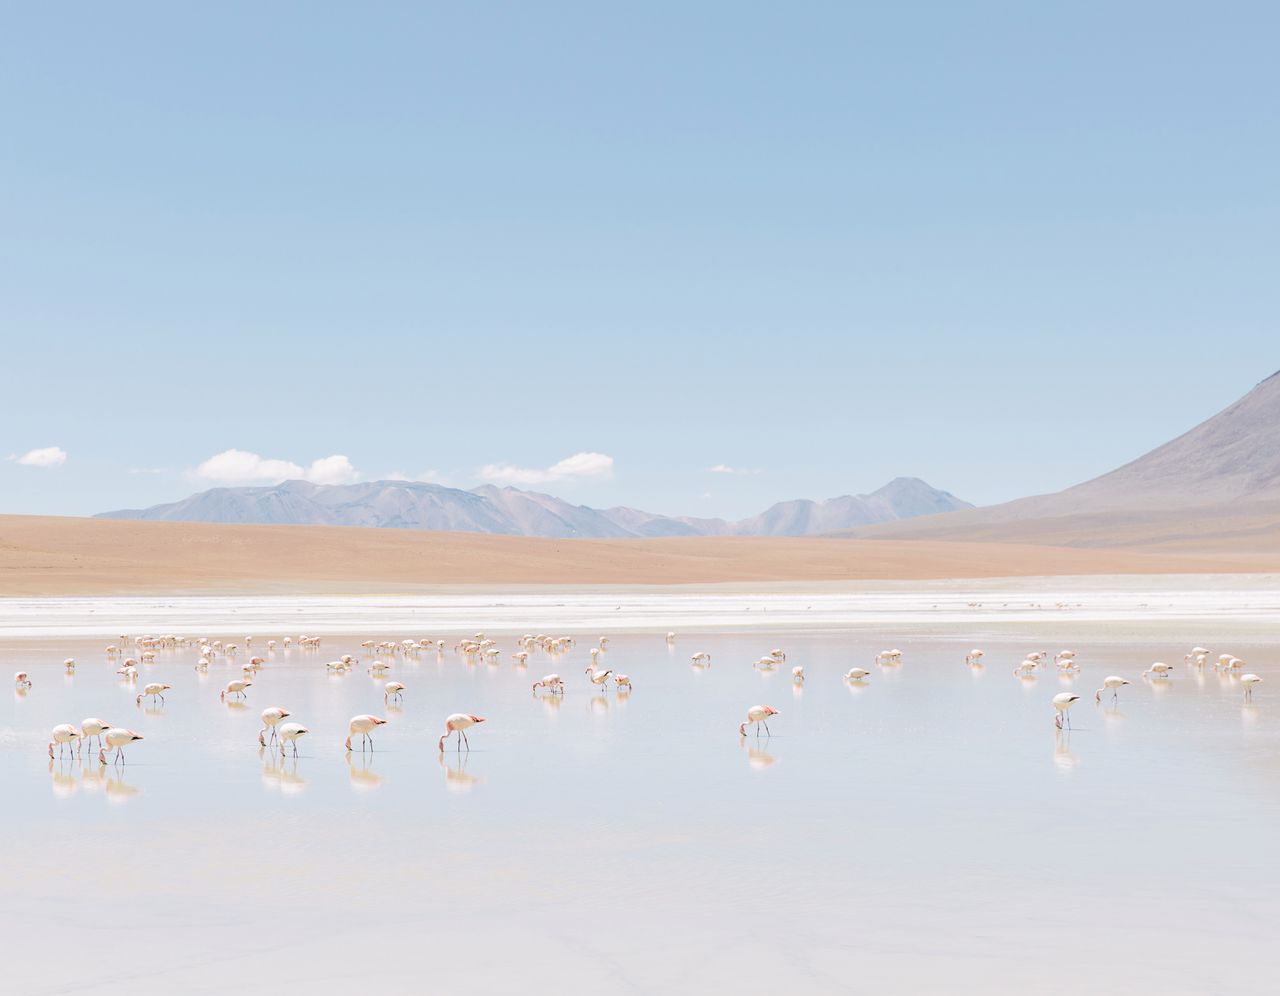 Faingnaert opisuje krajobraz Boliwii jako bardzo kontrastowy. Można znaleźć tam wszystko: biedę i bogactwo, góry i morza, czystą naturę oraz duże miasta. Ta różnorodność okazała się być razem dla fotografa-podróżnika, który chciał jak najlepiej poznać miejsce swojego pobytu. Kevin w rozmowie wspomina również przepiękne stado flamingów, które spotkał w okolicy jeziora Liticaca.